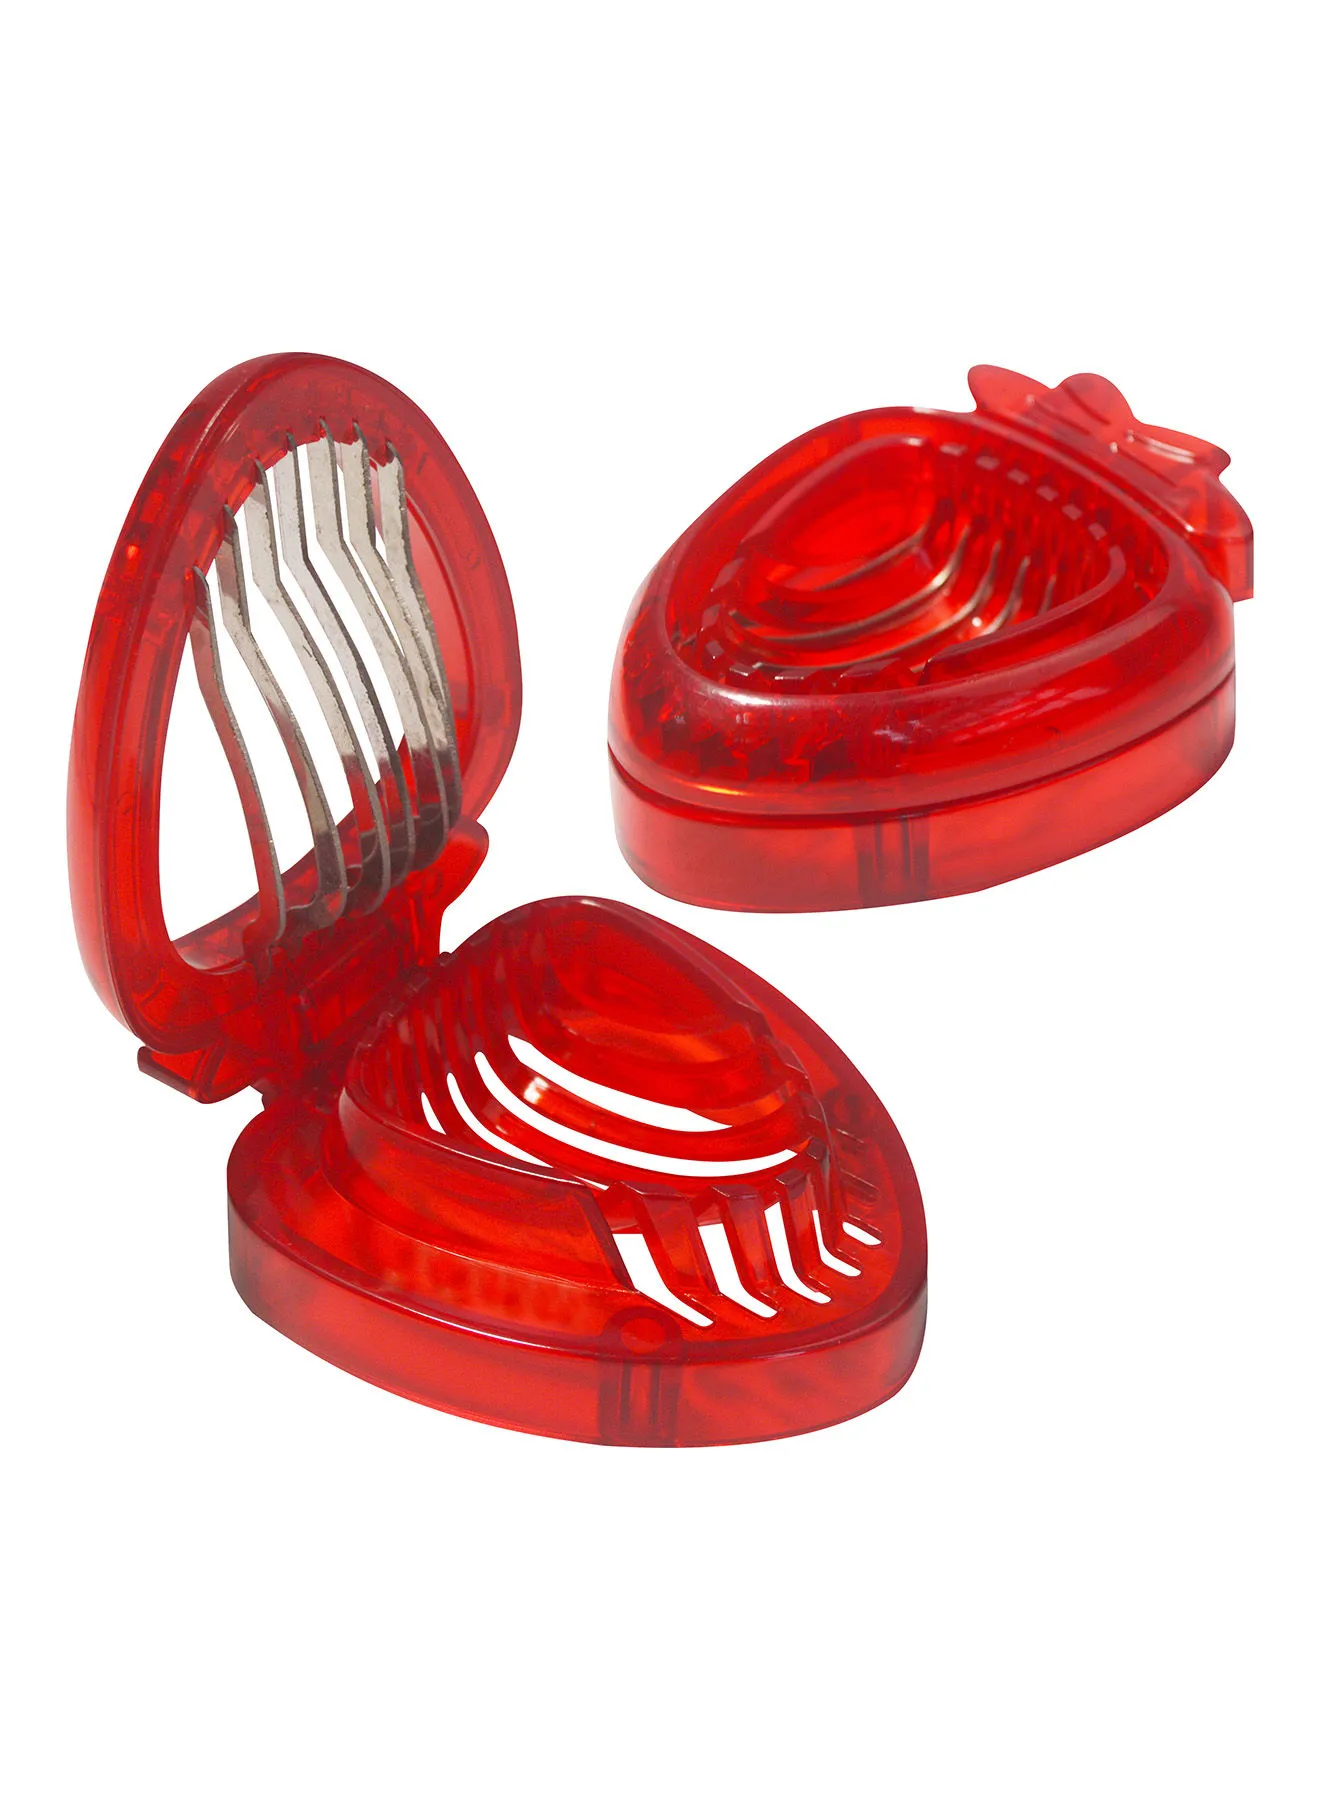 Amal 2 Piece Strawberry Slicer - Kitchen Accessories - Kitchen Tool - Fruits - Red